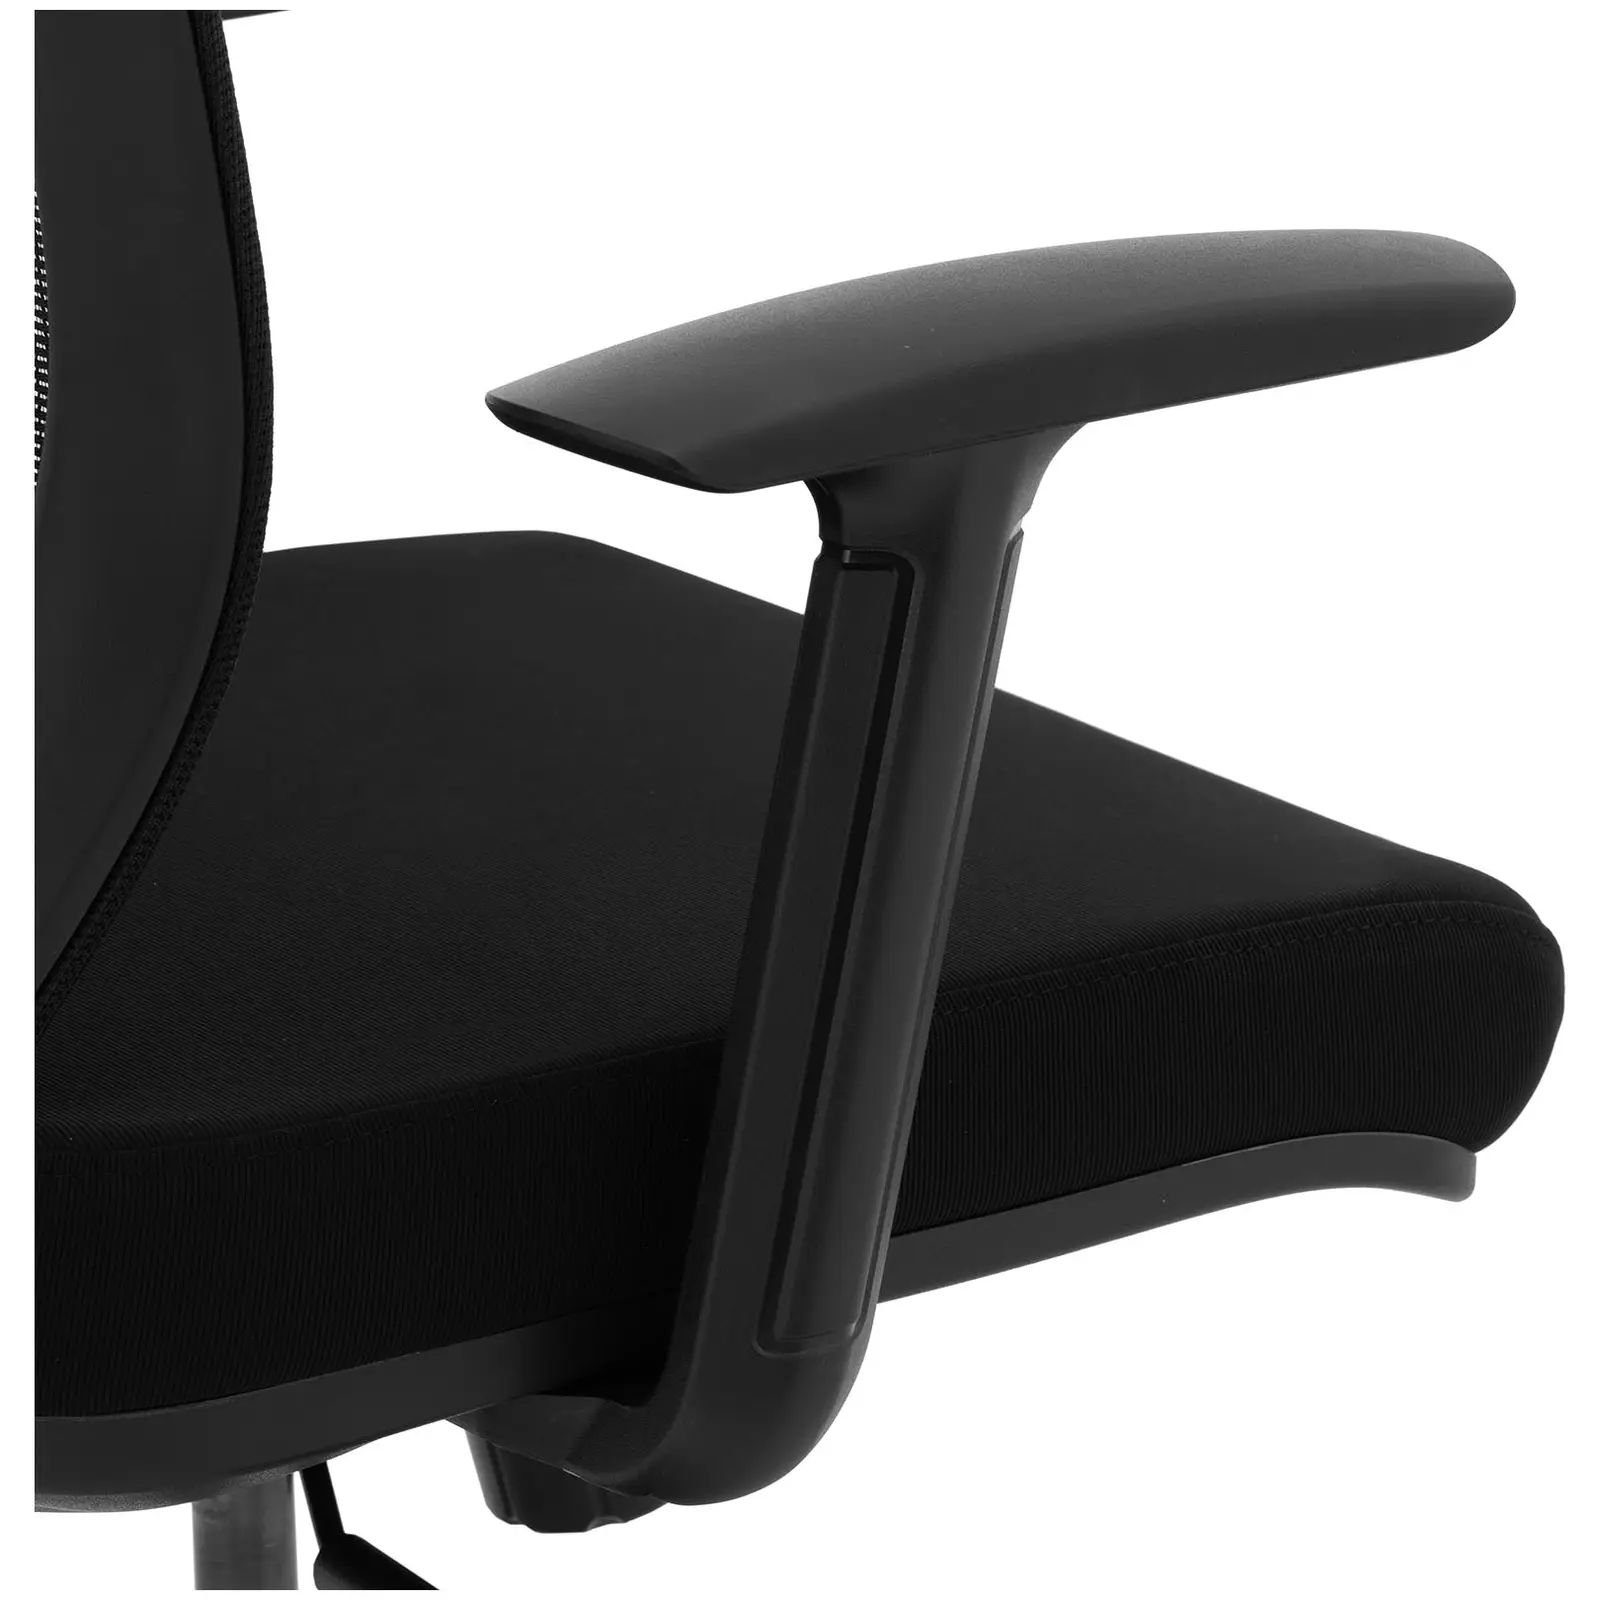 Bürostuhl - Netzrücken - Kopfstütze - 50 x 50 cm Sitz - bis 150 kg - schwarz